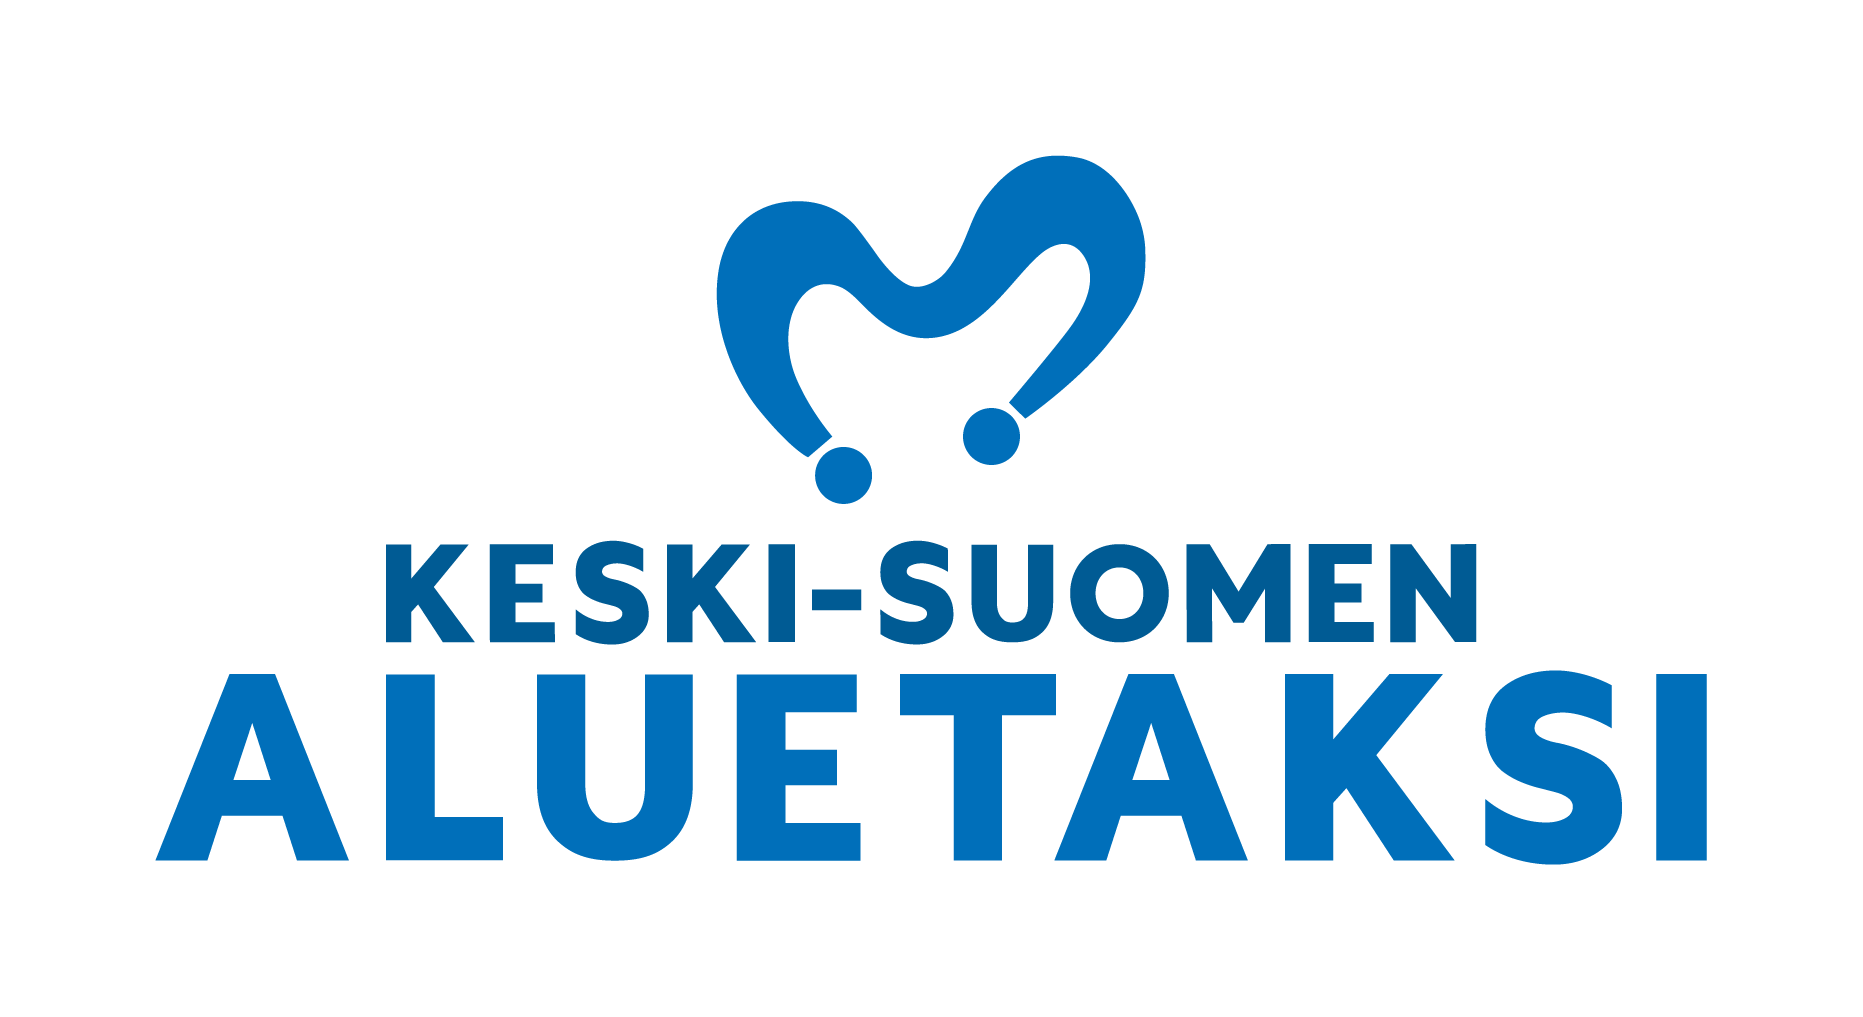 Keski-Suomen Aluetaksin logo